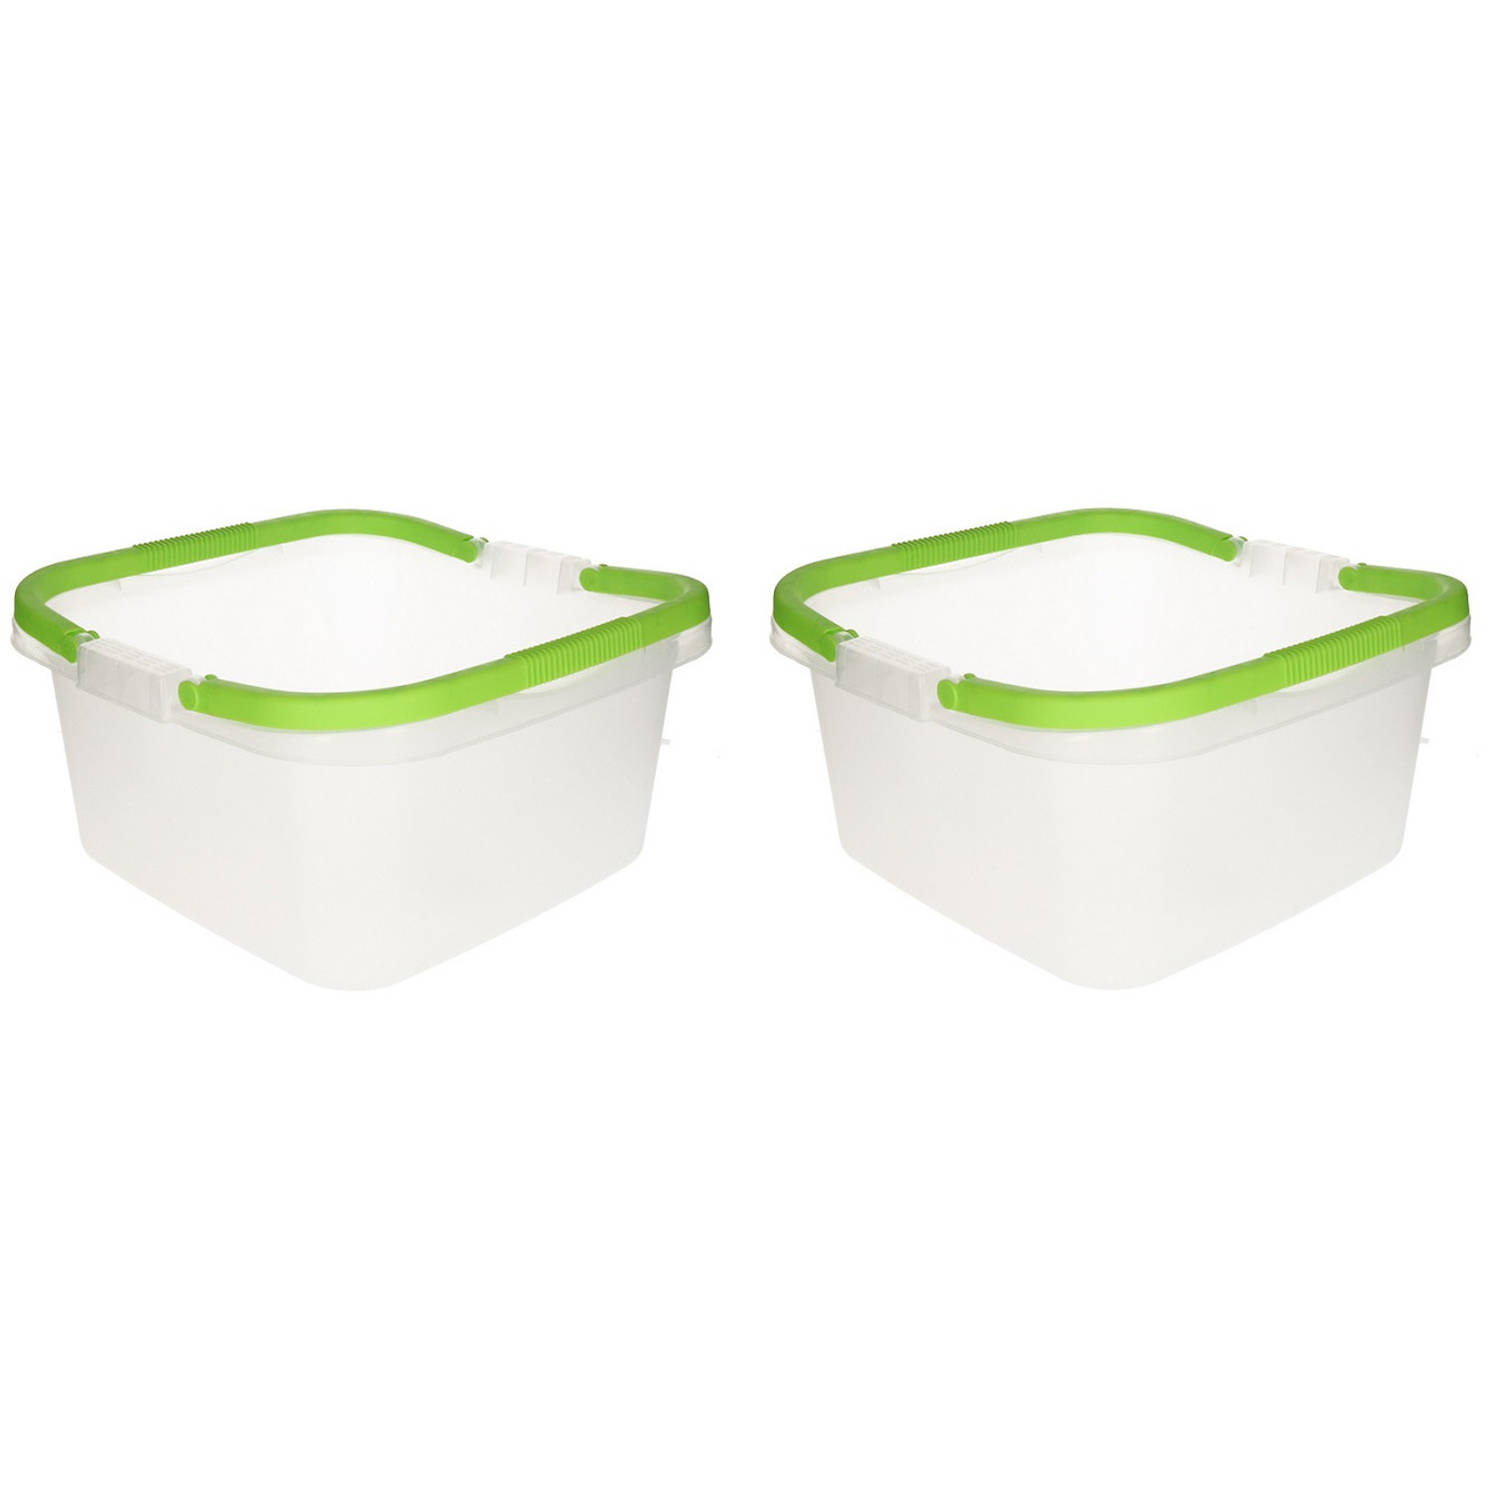 Set van 2x stuks handige transparante teilen / afwasteilen met handvat lime groen 13 liter - Afwasbak